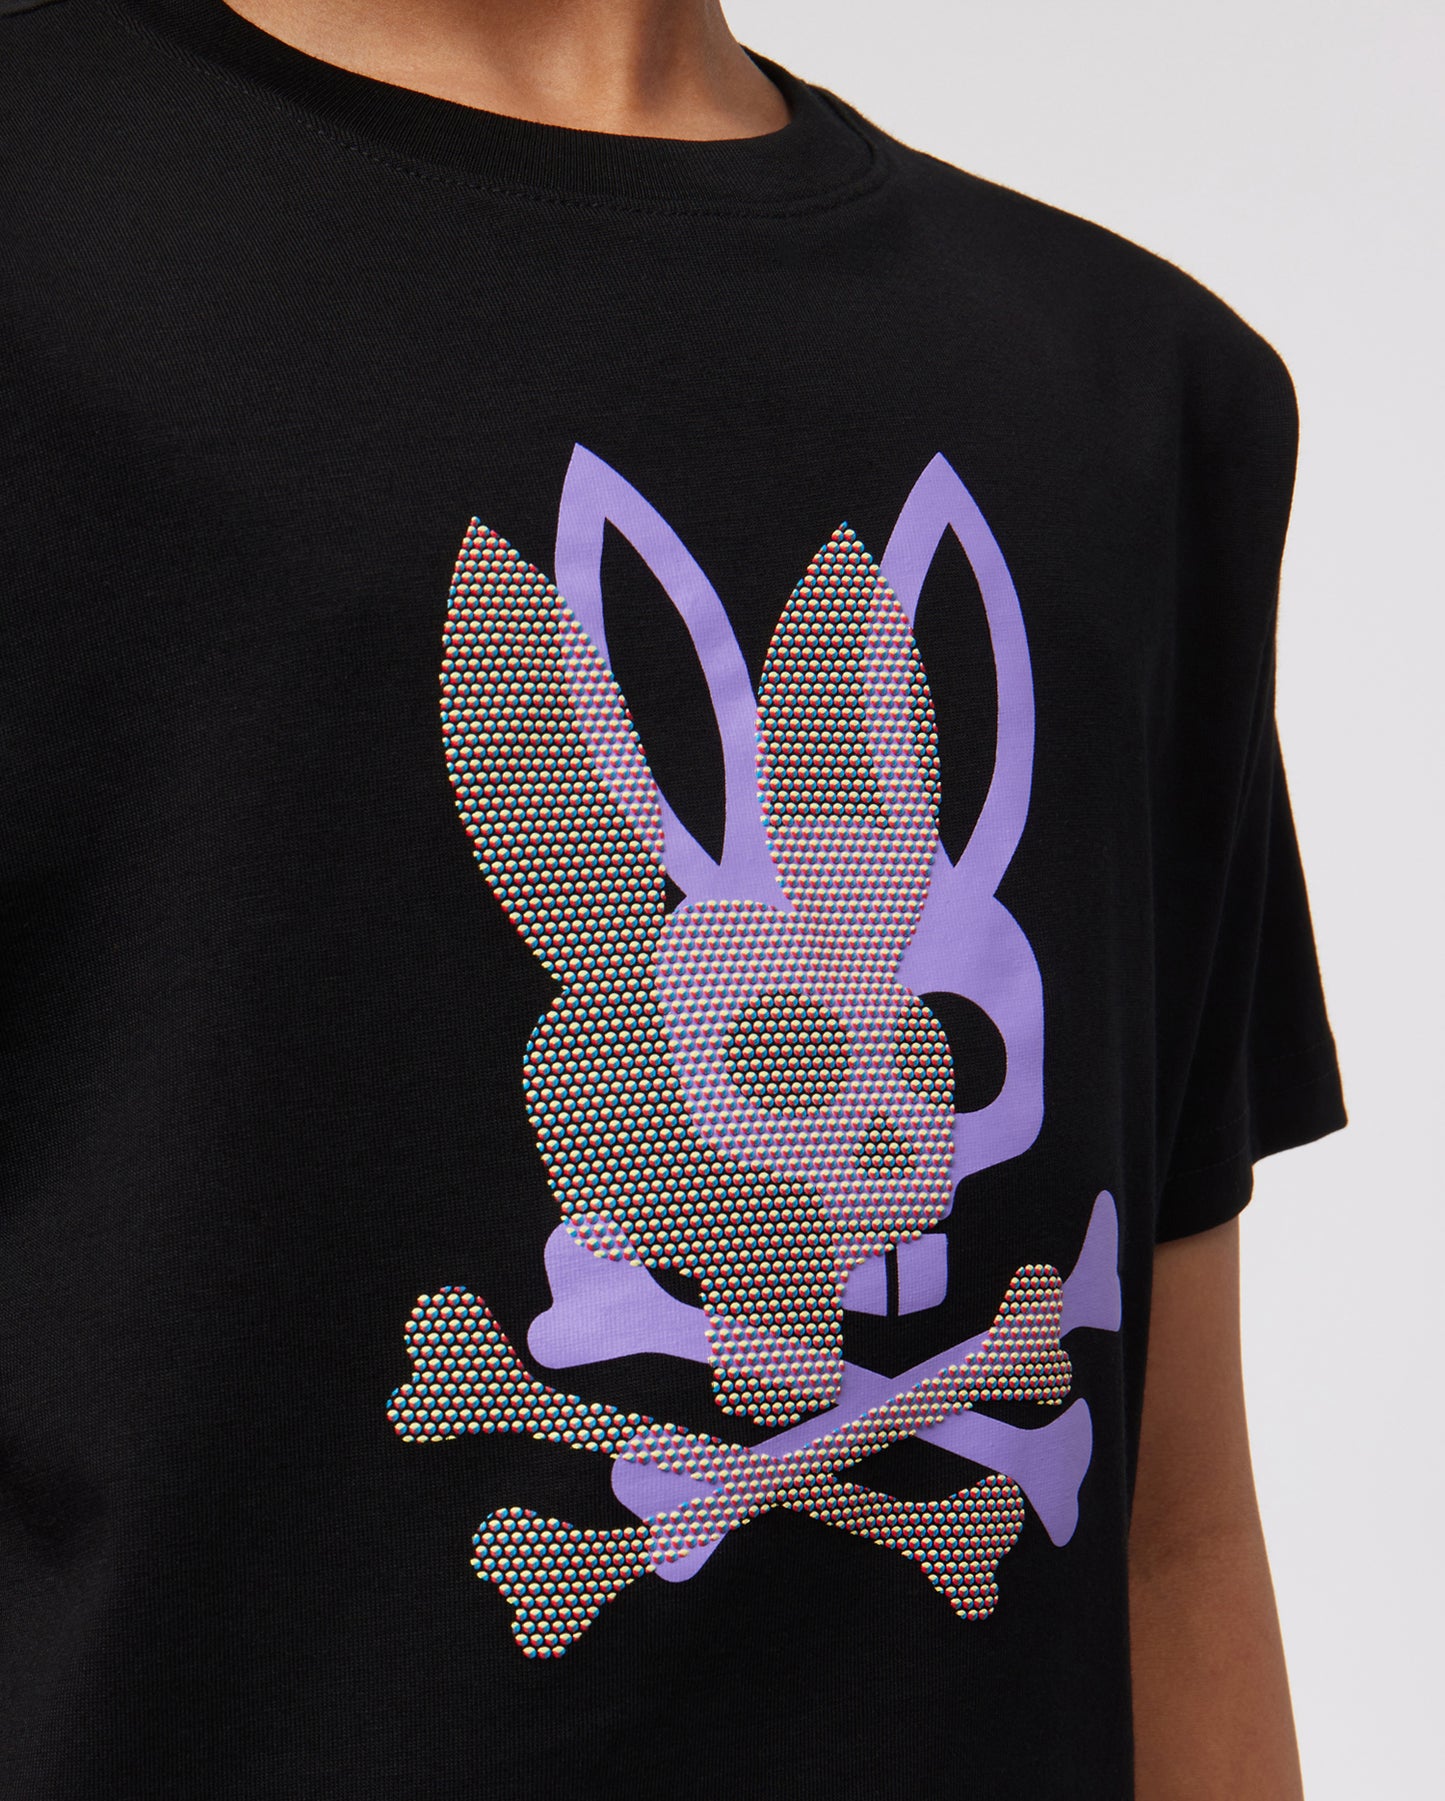 Louis Vuitton Bugs Bunny Women's V-Neck T-Shirt 